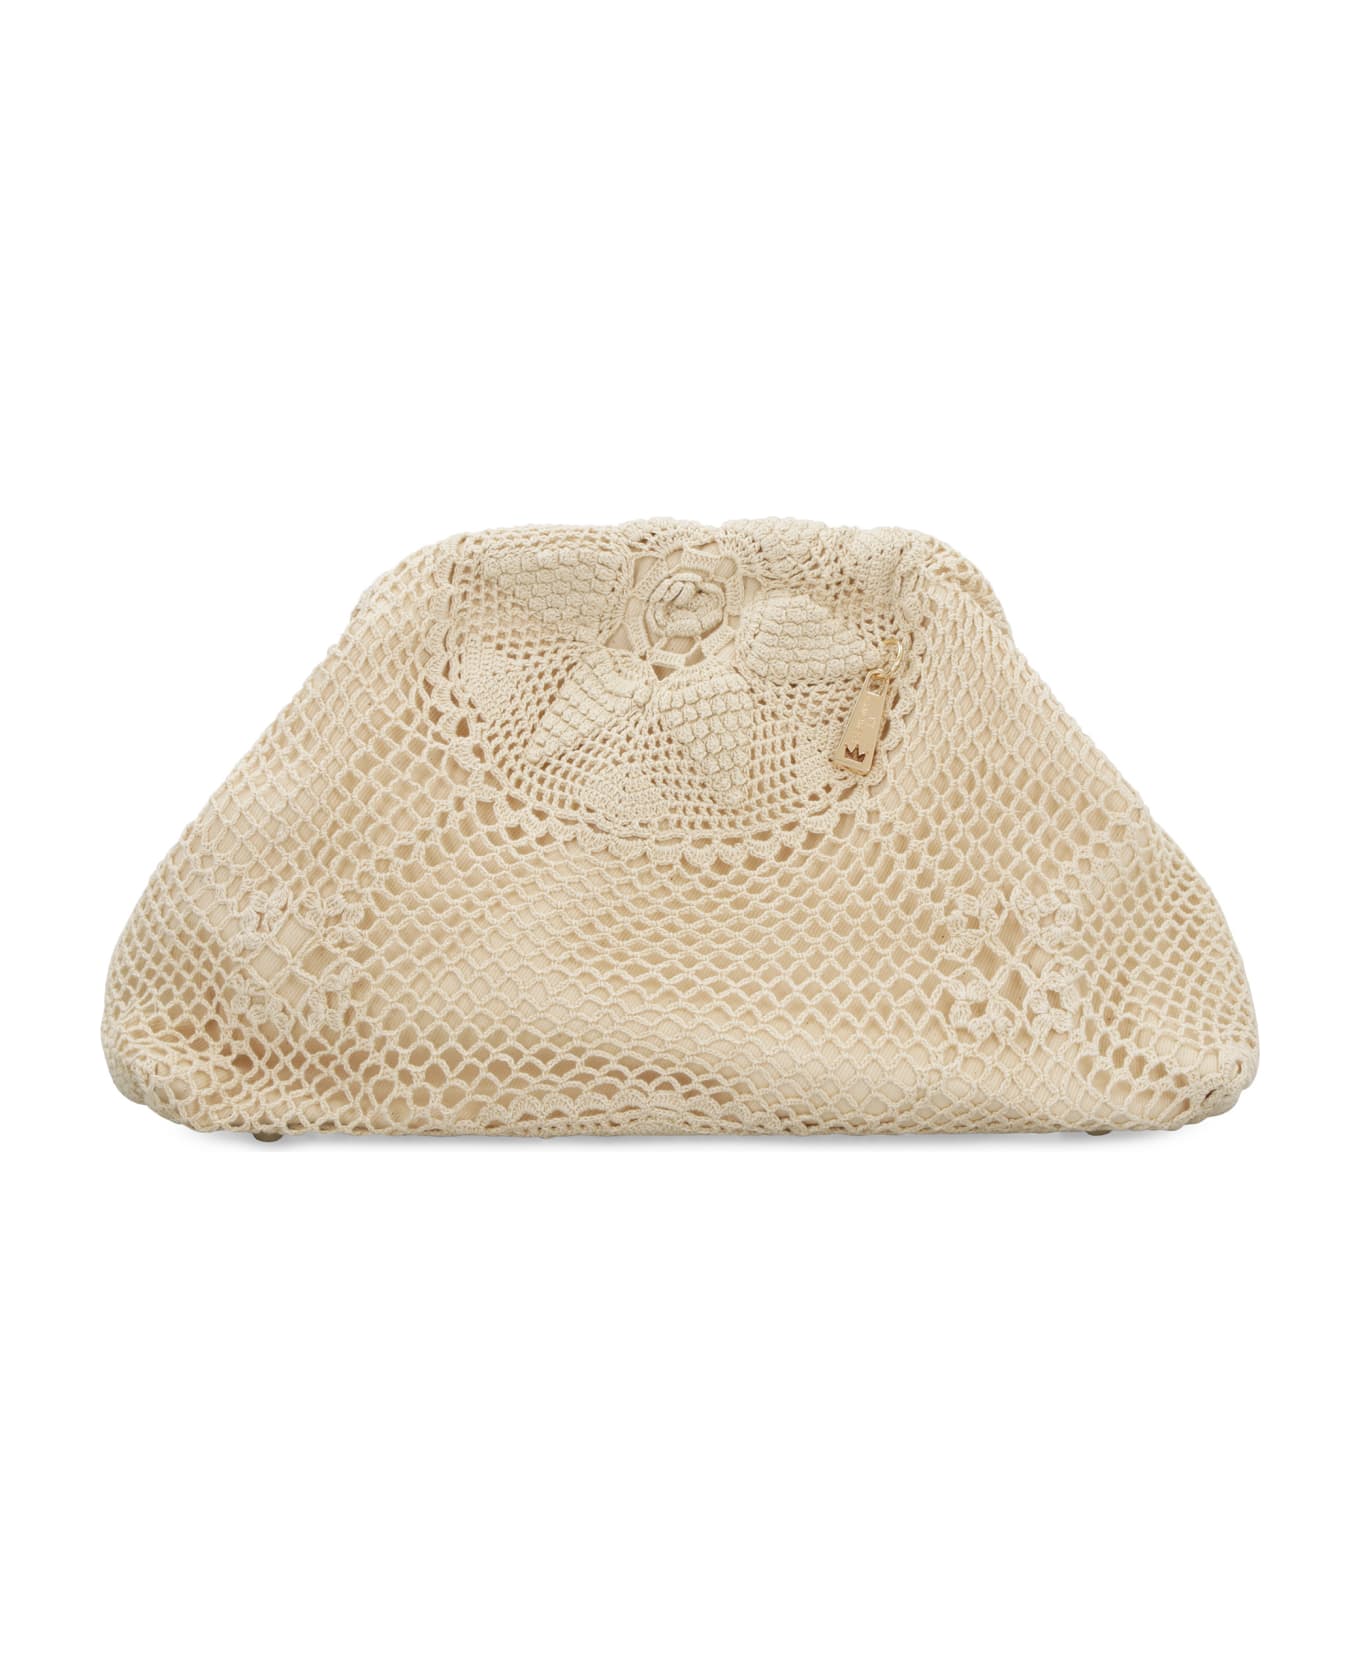 LaMilanesa Taormina Crochet Bag - Ecru クラッチバッグ